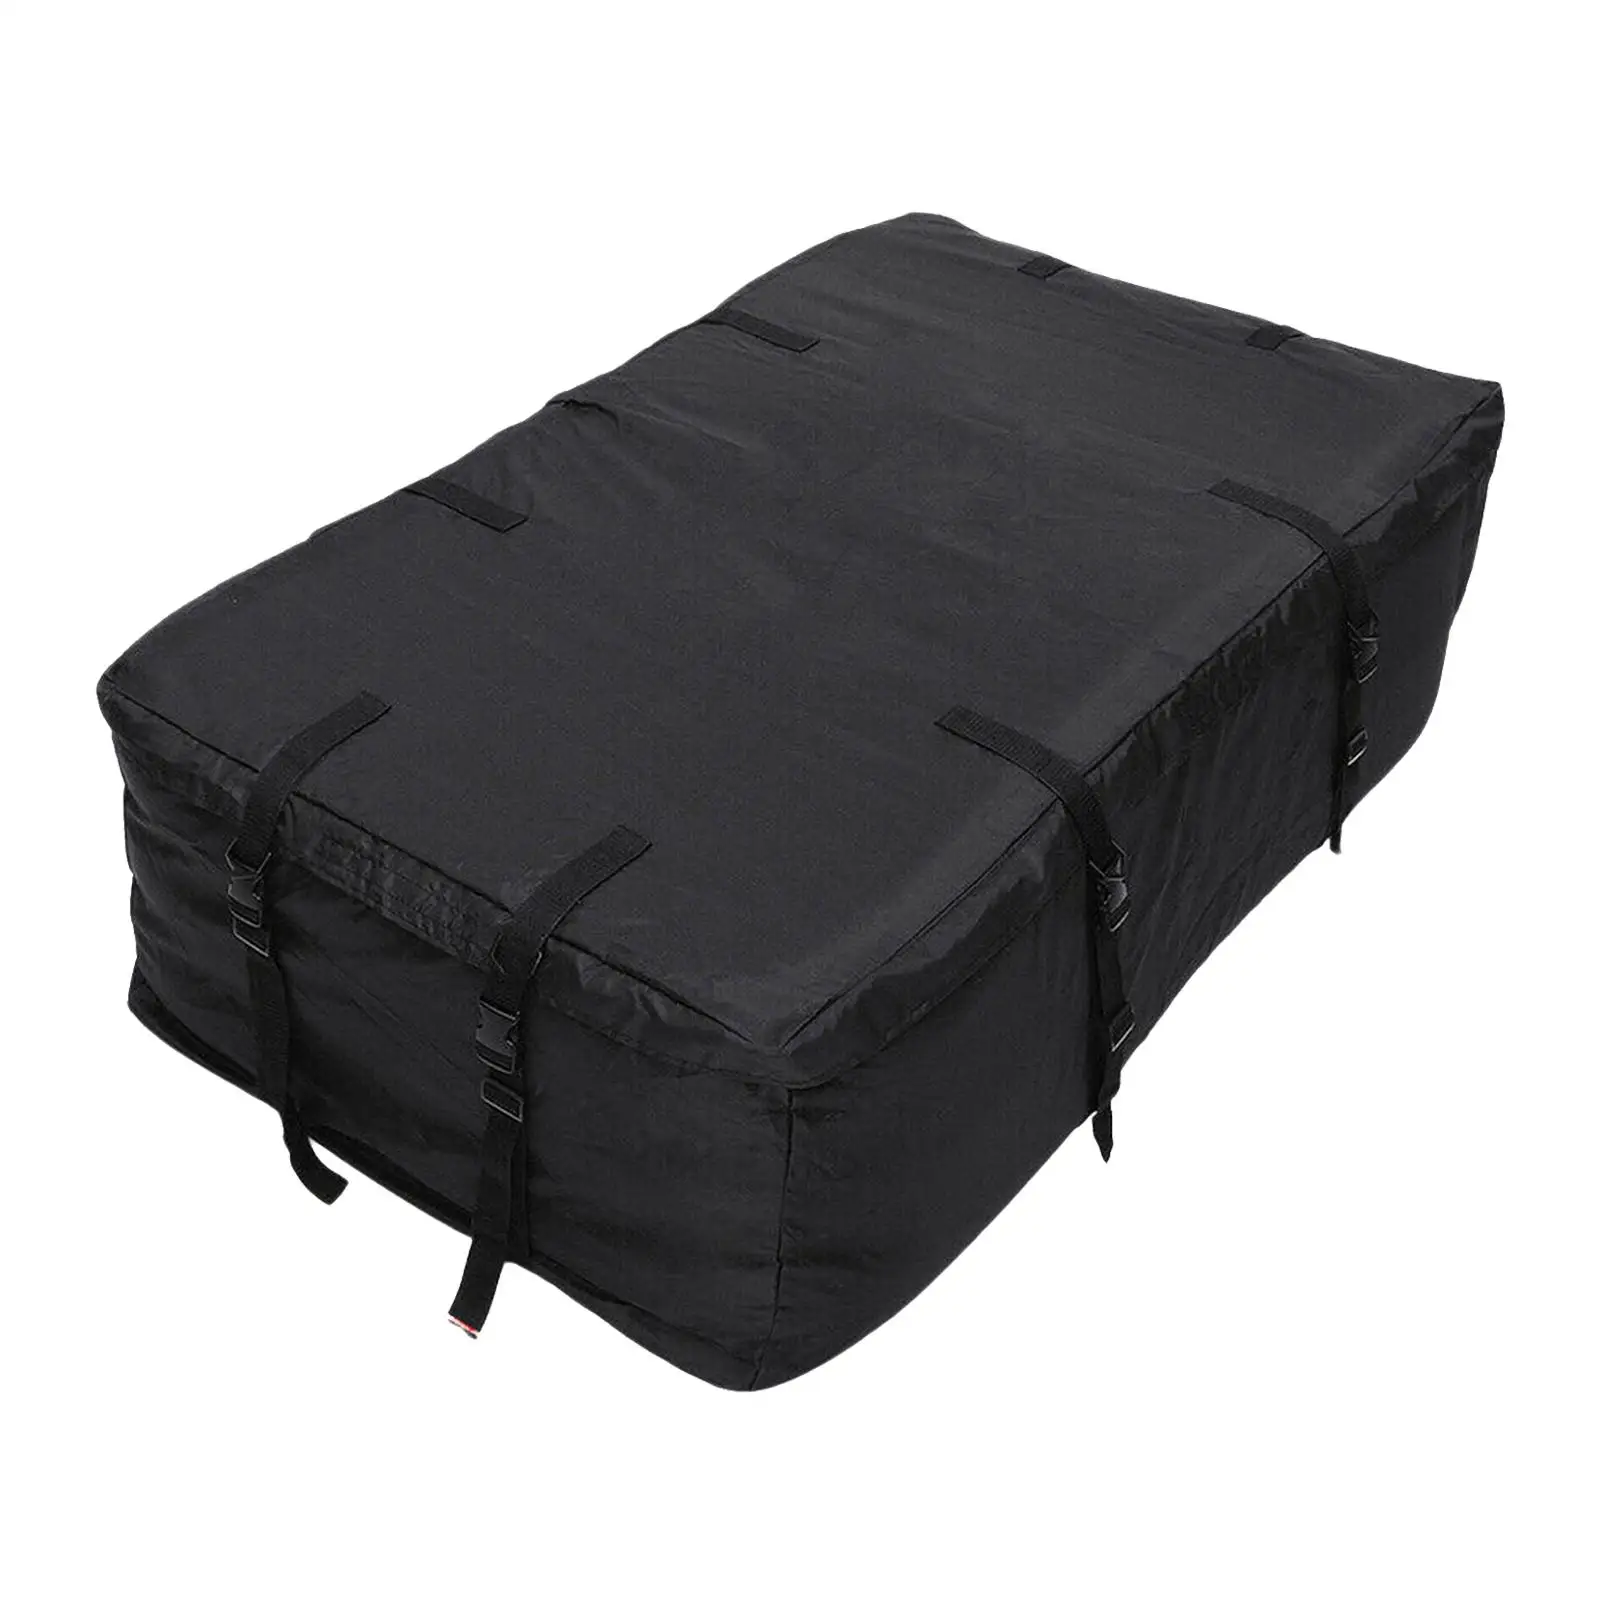 Waterproof Car Roof Top Rack Bag Carrier Travel Luggage Cargo Storage